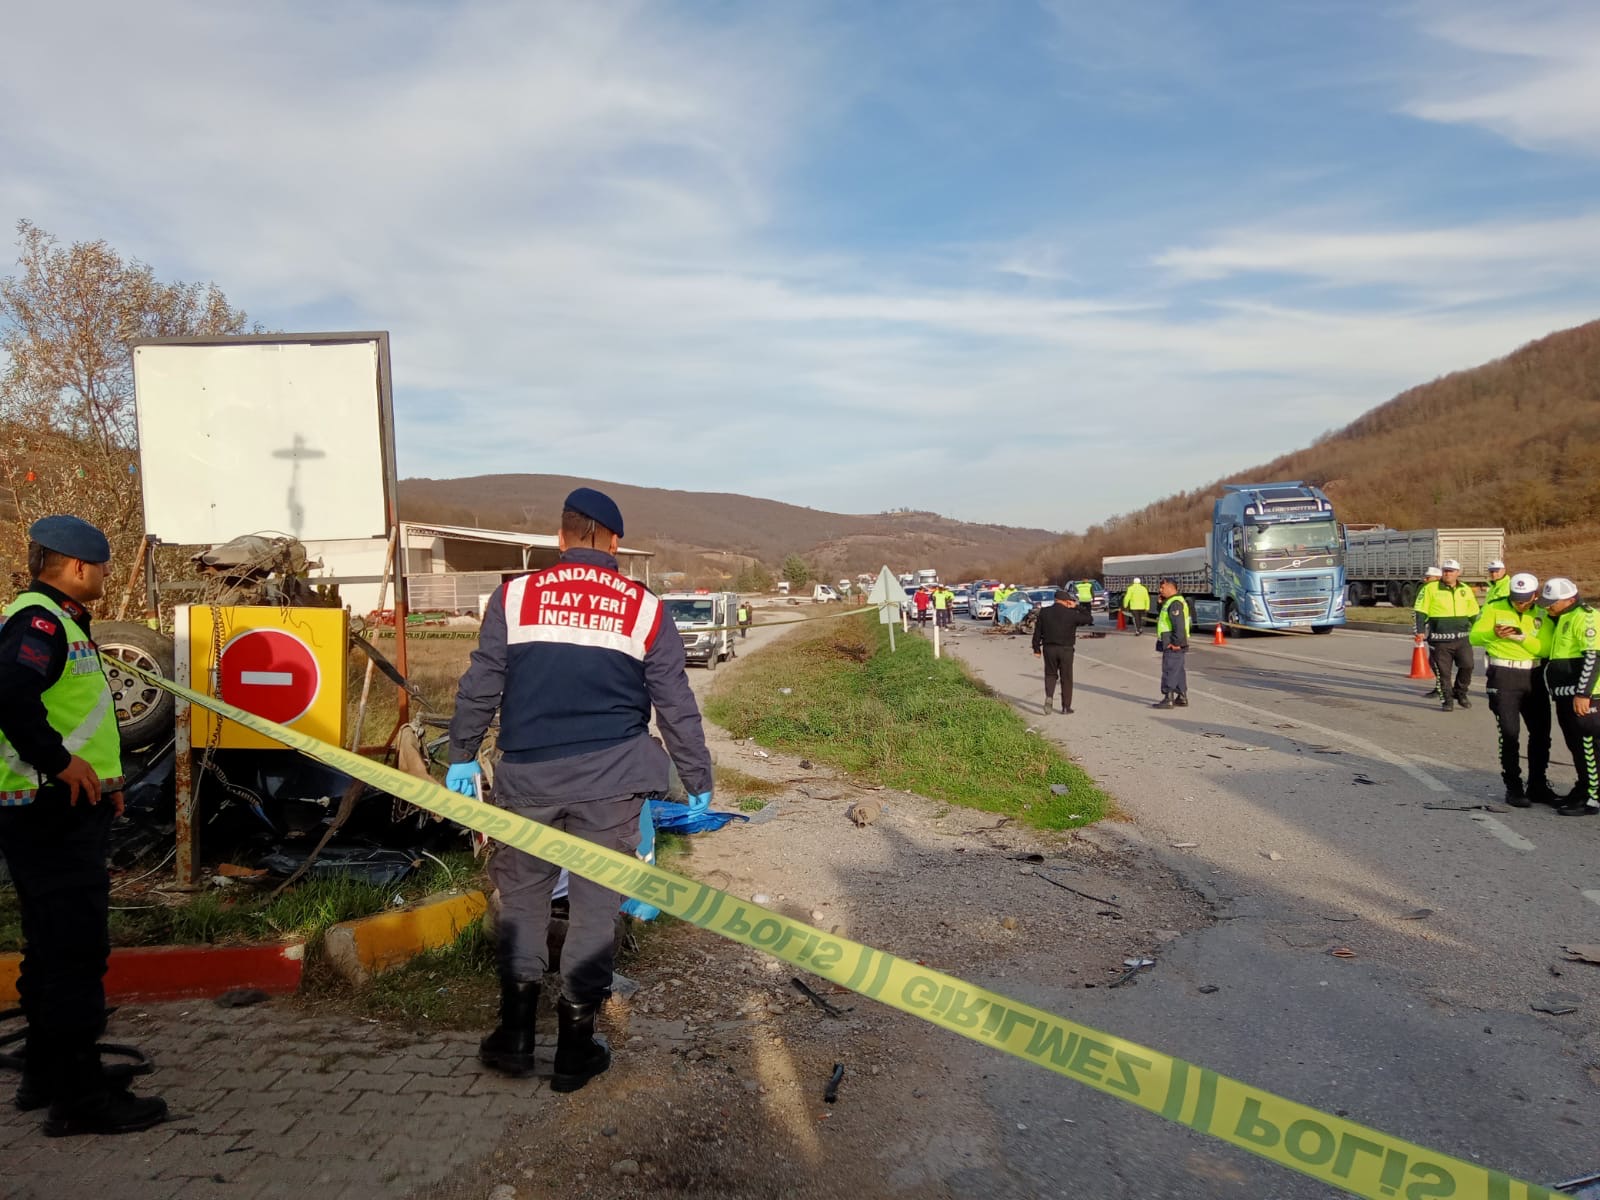 Samsun’da bir otomobil ile yolcu otobüsü çarpıştı. Kazada 2 kişi hayatını kaybederken, 3 kişi ise yaralandı.